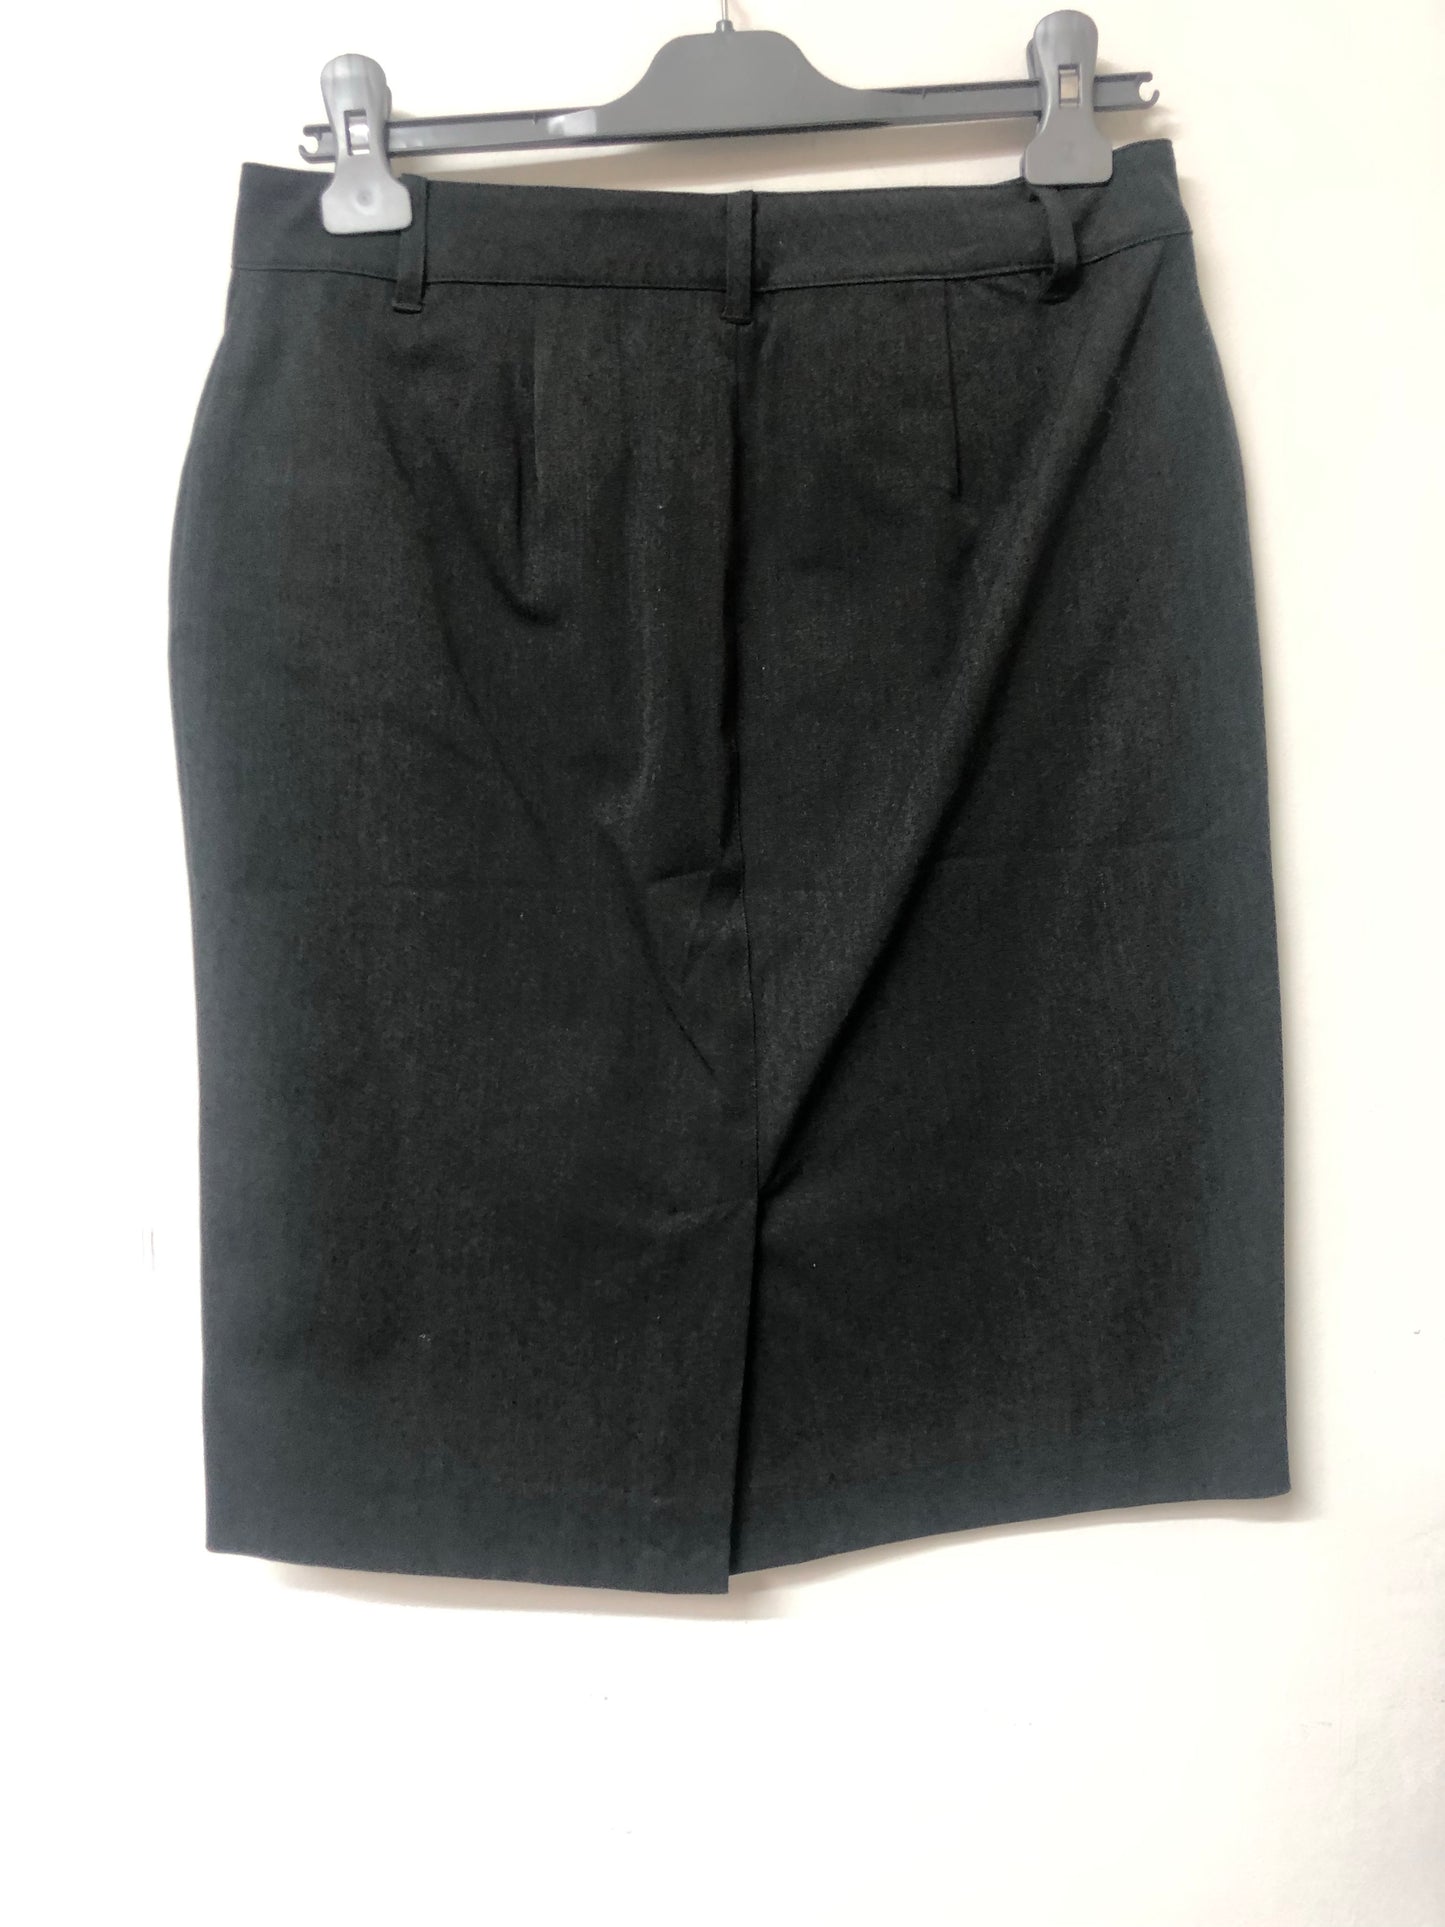 Grey Ralph Lauren Skirt with Zip detail Size 2